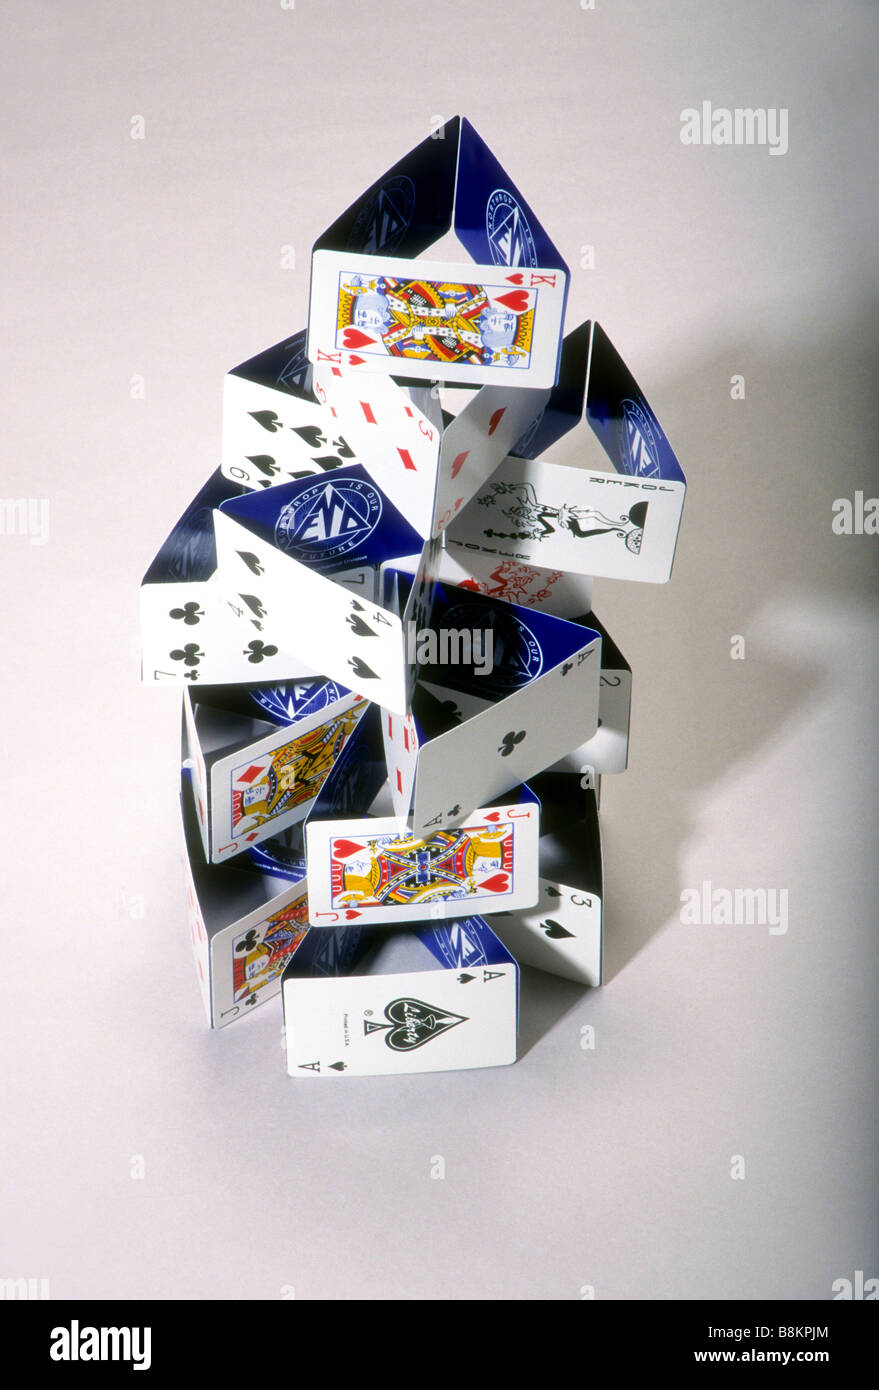 House Of Cards erstellt Stapel von Spielkarten Turm mit kein Kleber Stockfoto